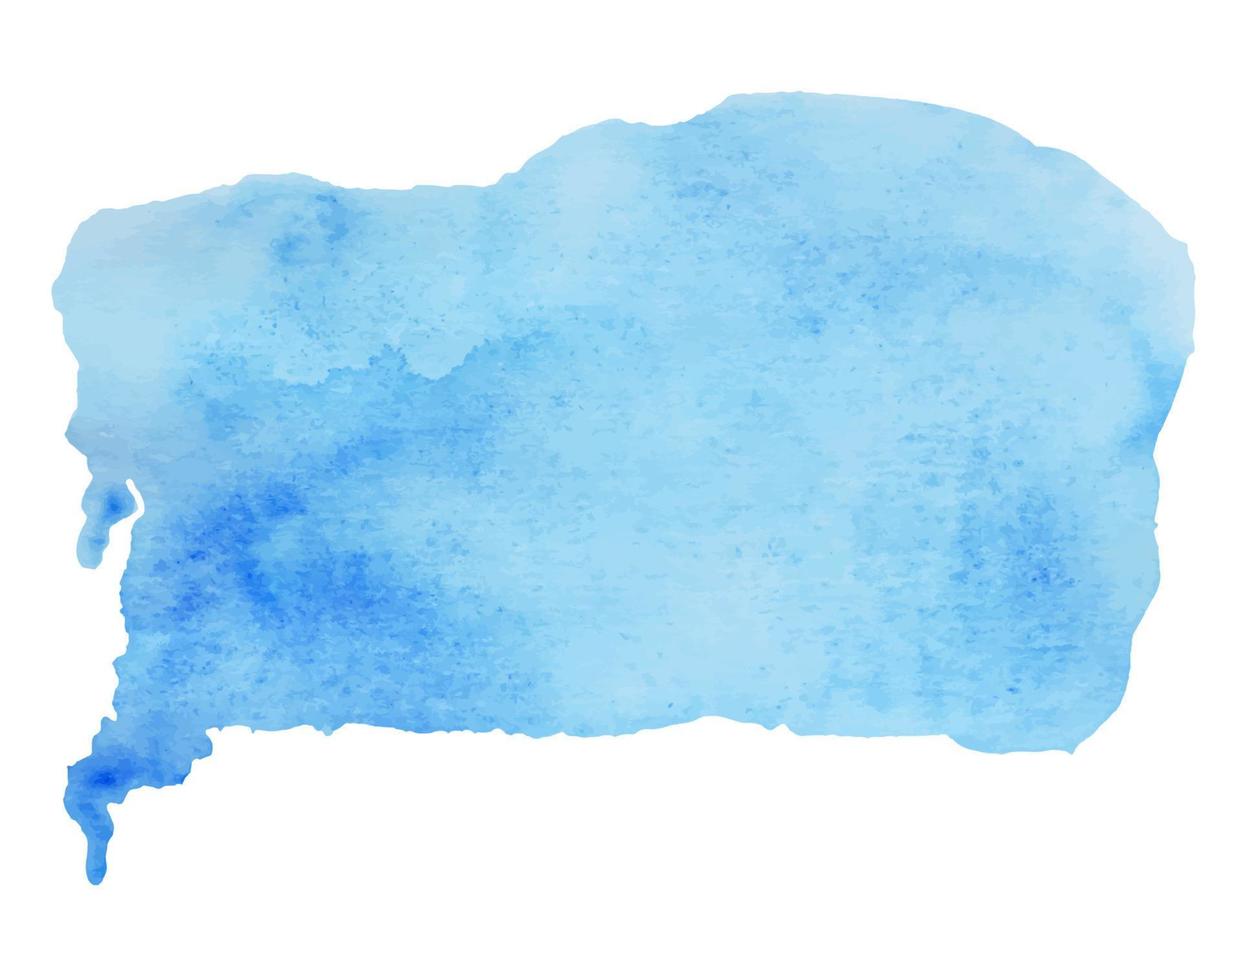 Vektor der blauen Farbe, handgezeichneter Aquarell-Flüssigkeitsfleck, Aquarellhintergrund. abstrakte Aquamarinflecken, Kritzeleien, Tropfen eines Elements für Design, Illustration, Tapete, Postkarten